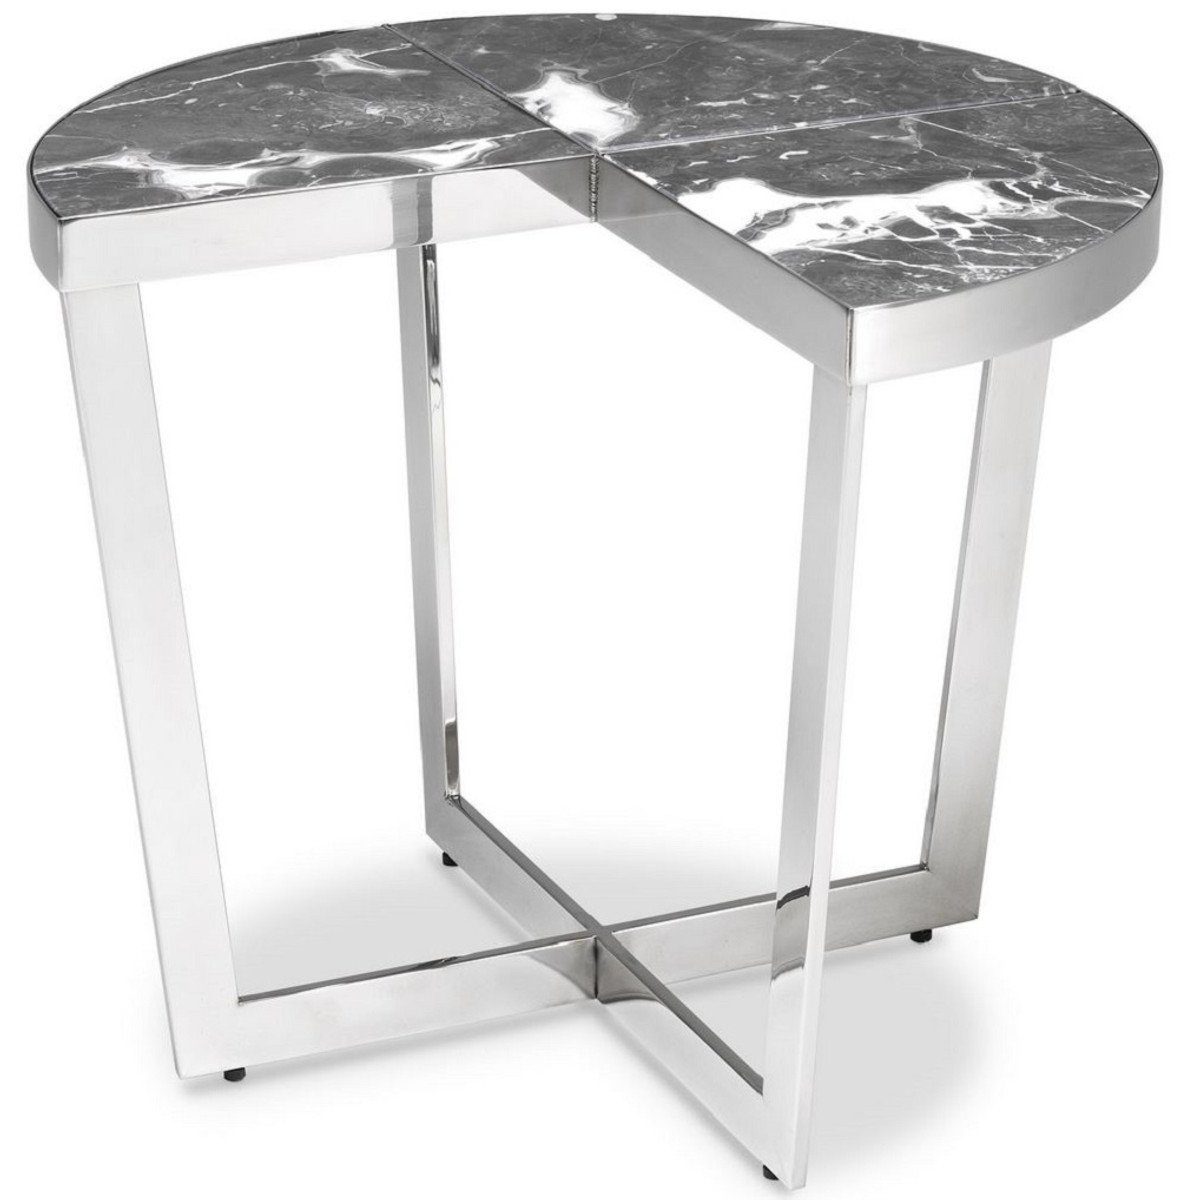 Casa Padrino Beistelltisch Luxus Beistelltisch Silber / Grau Ø 60 x H. 50,5 cm - Edelstahl Tisch mit Marmorplatten - Luxus Möbel